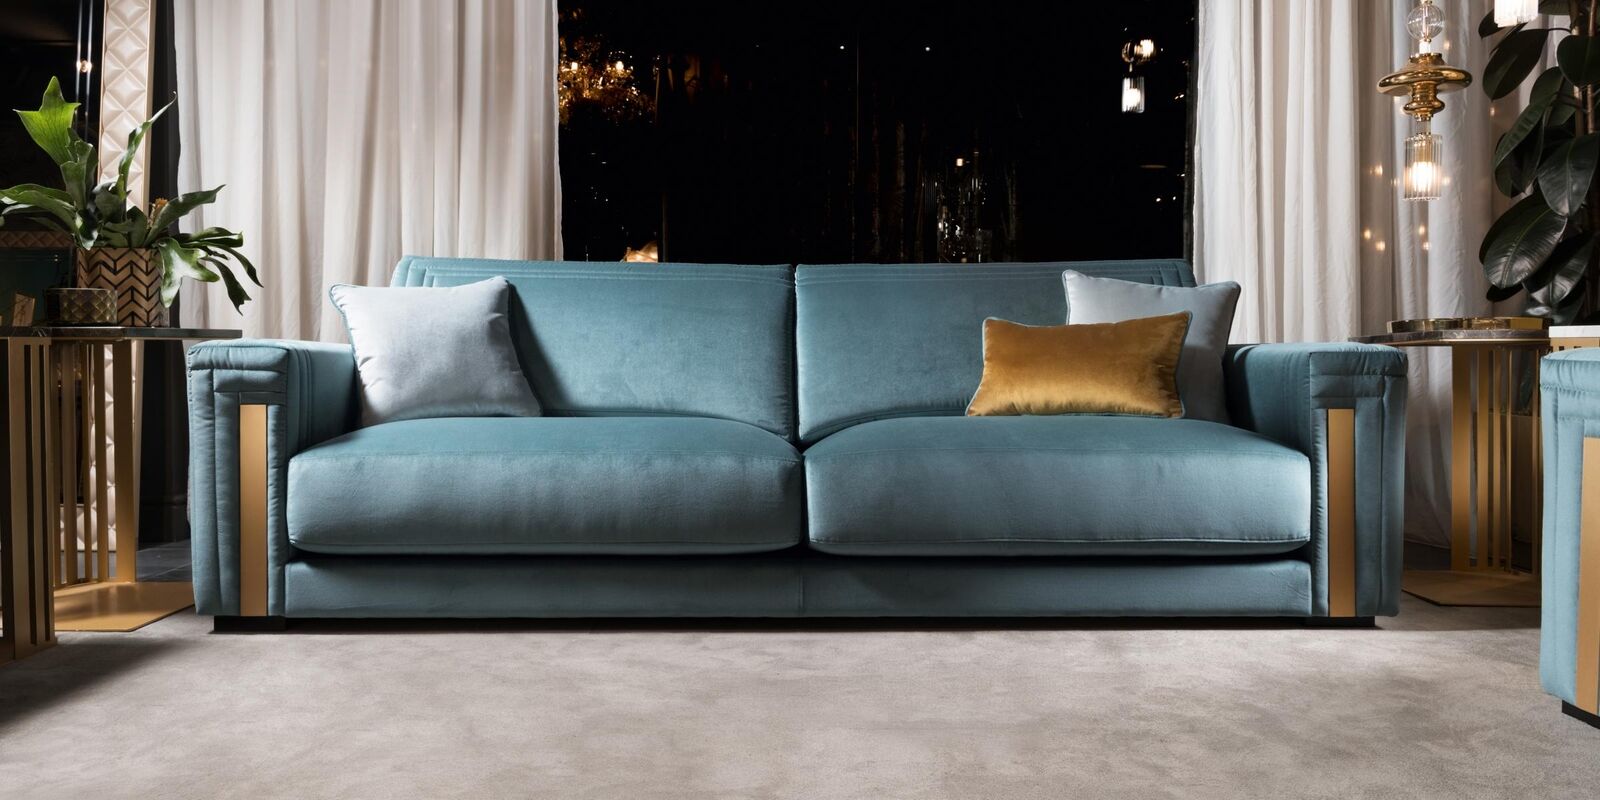 Dreisitzer 3 Sitzer Wohnzimmer Polster Textil Modern Luxus Design Sofa Möbel Neu